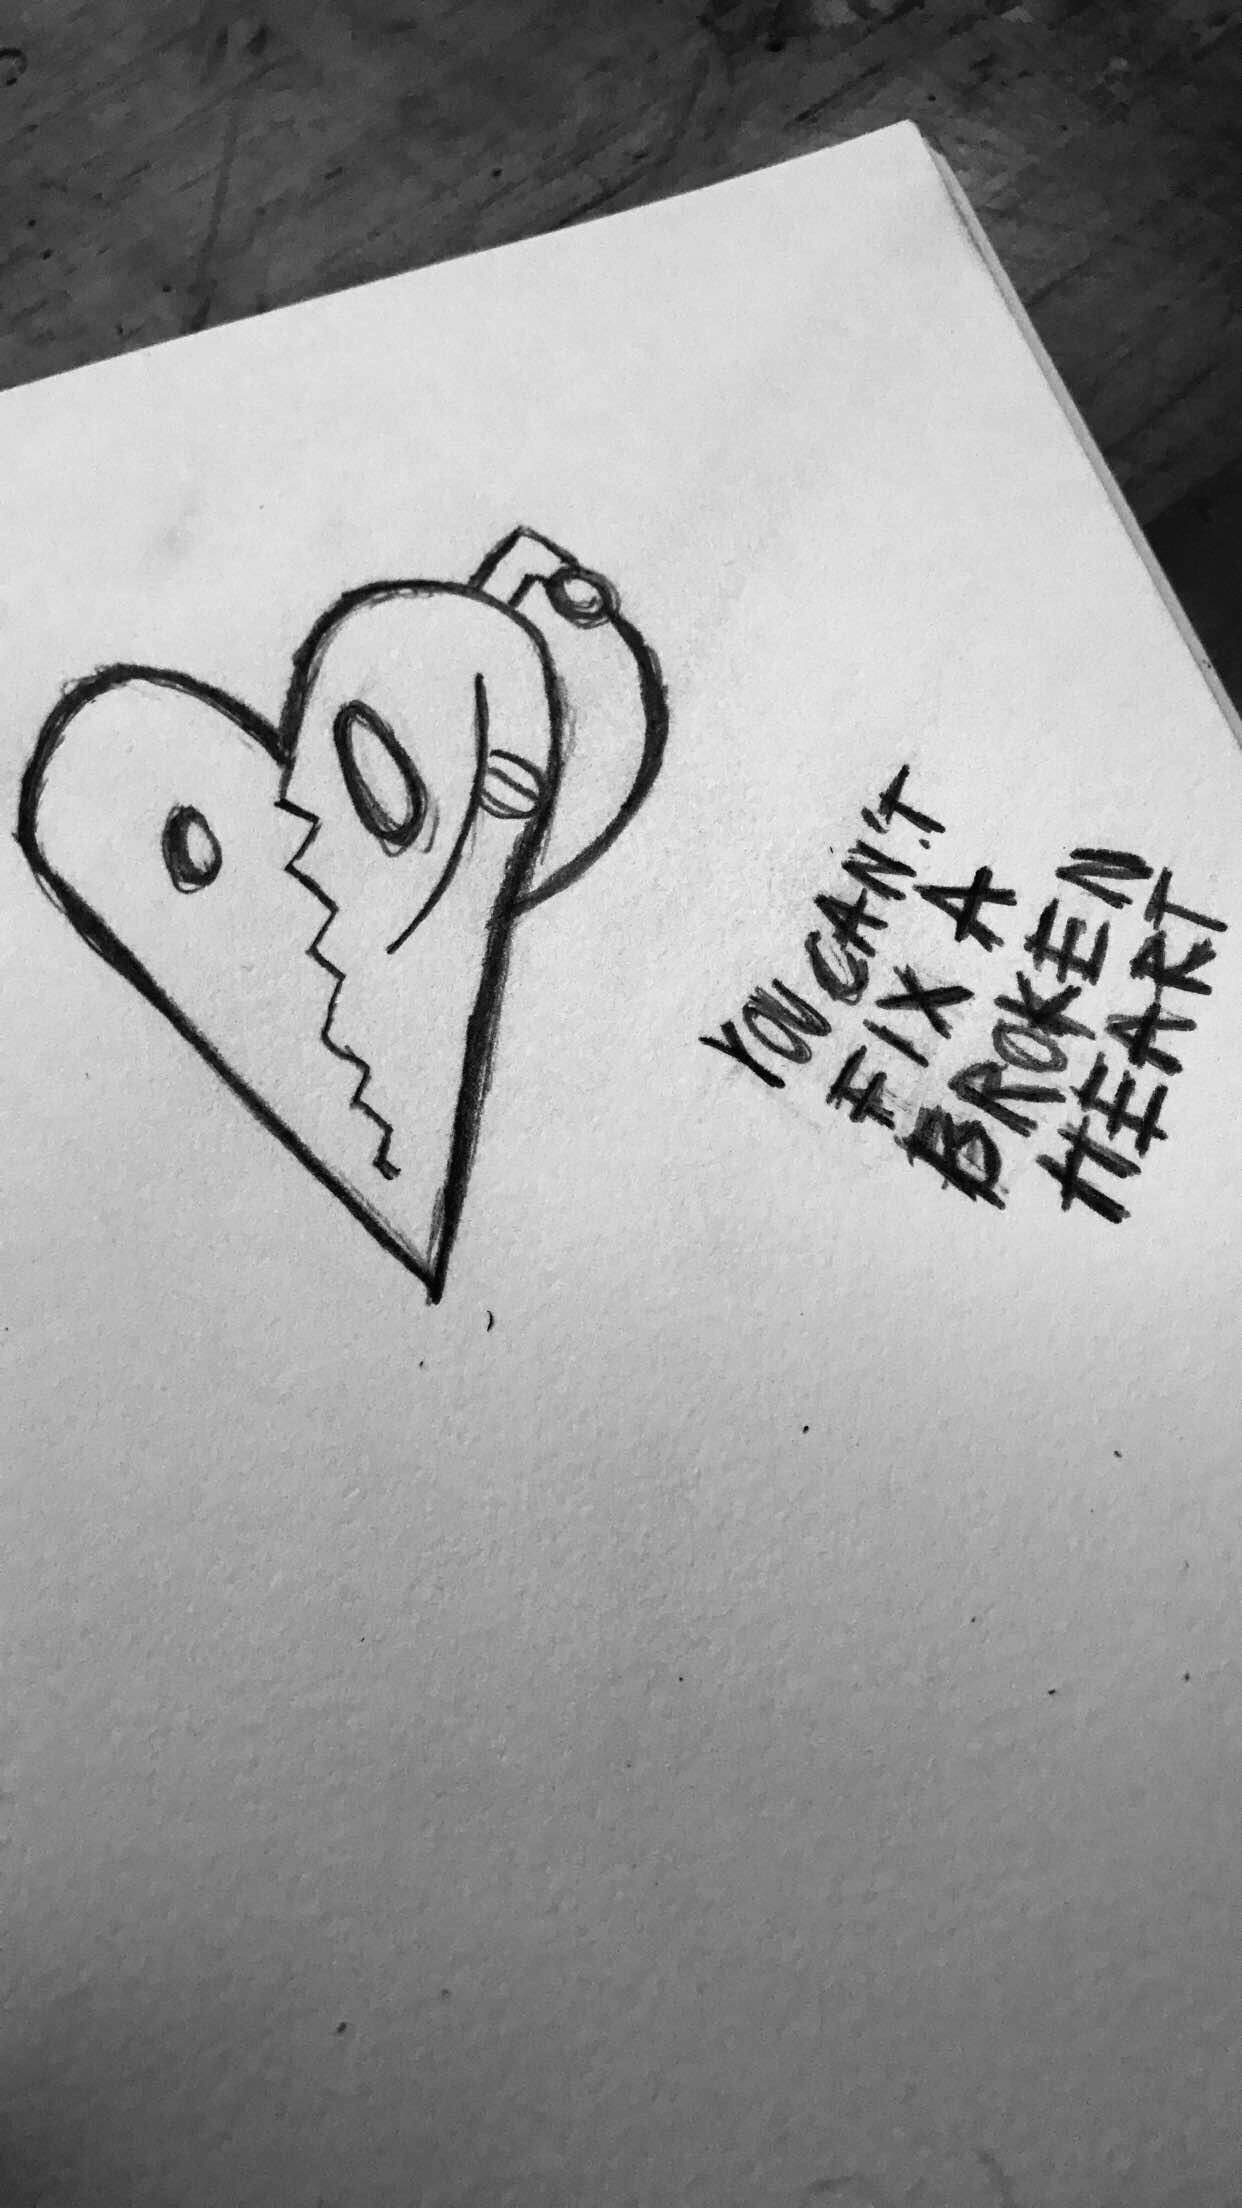 Xxxtentacion Broken Heart Tattoo Wallpapers.